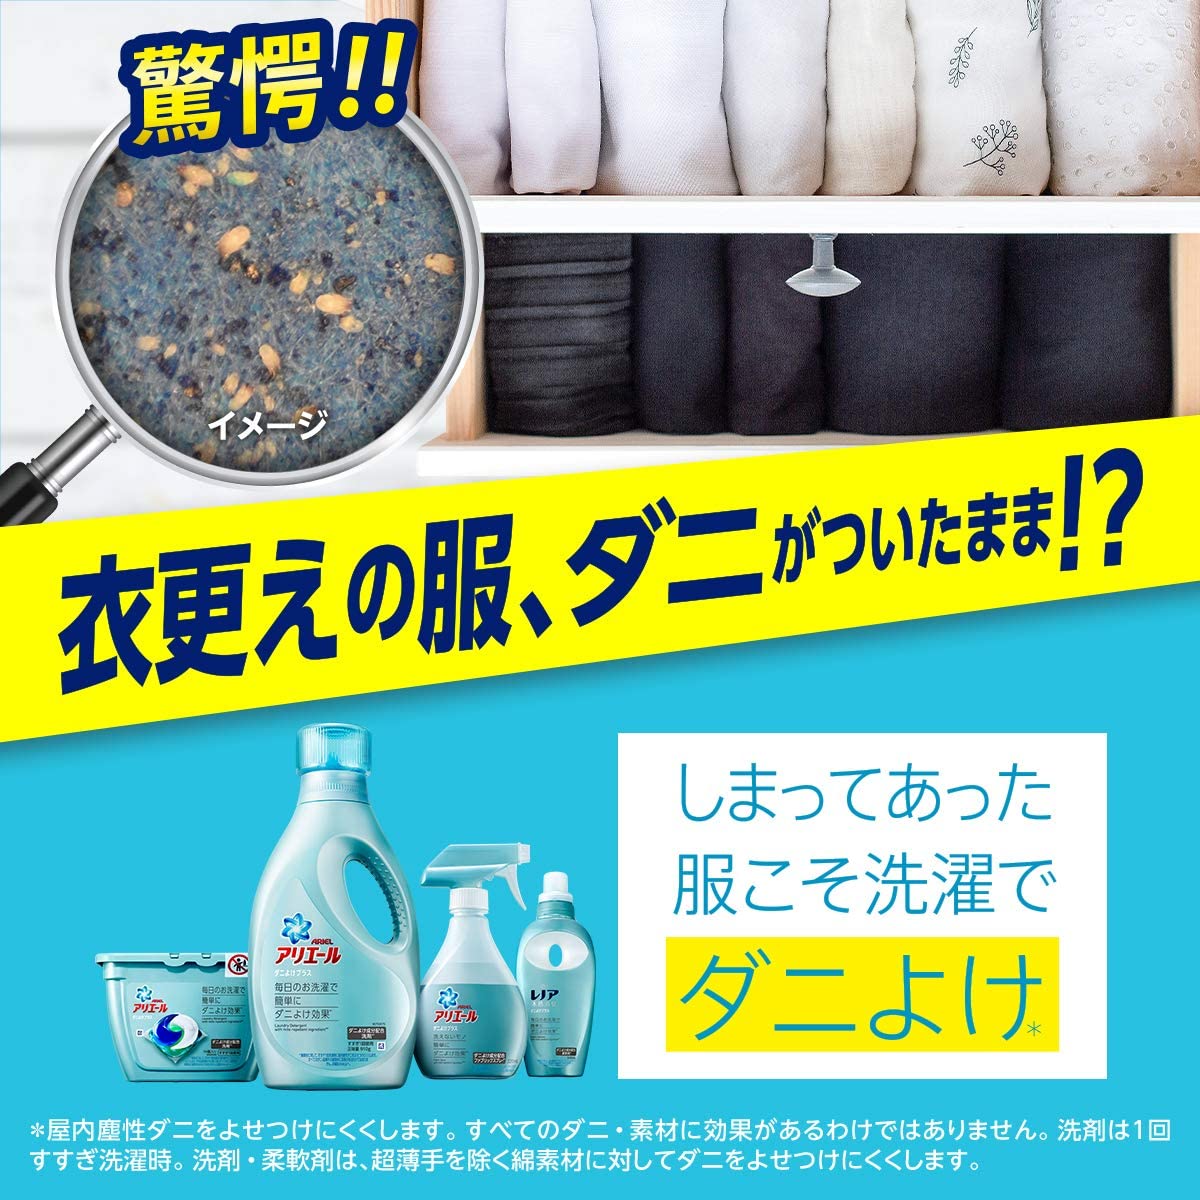 P&G ARIEL 日本超濃縮抗菌抗蟎洗衣 910g